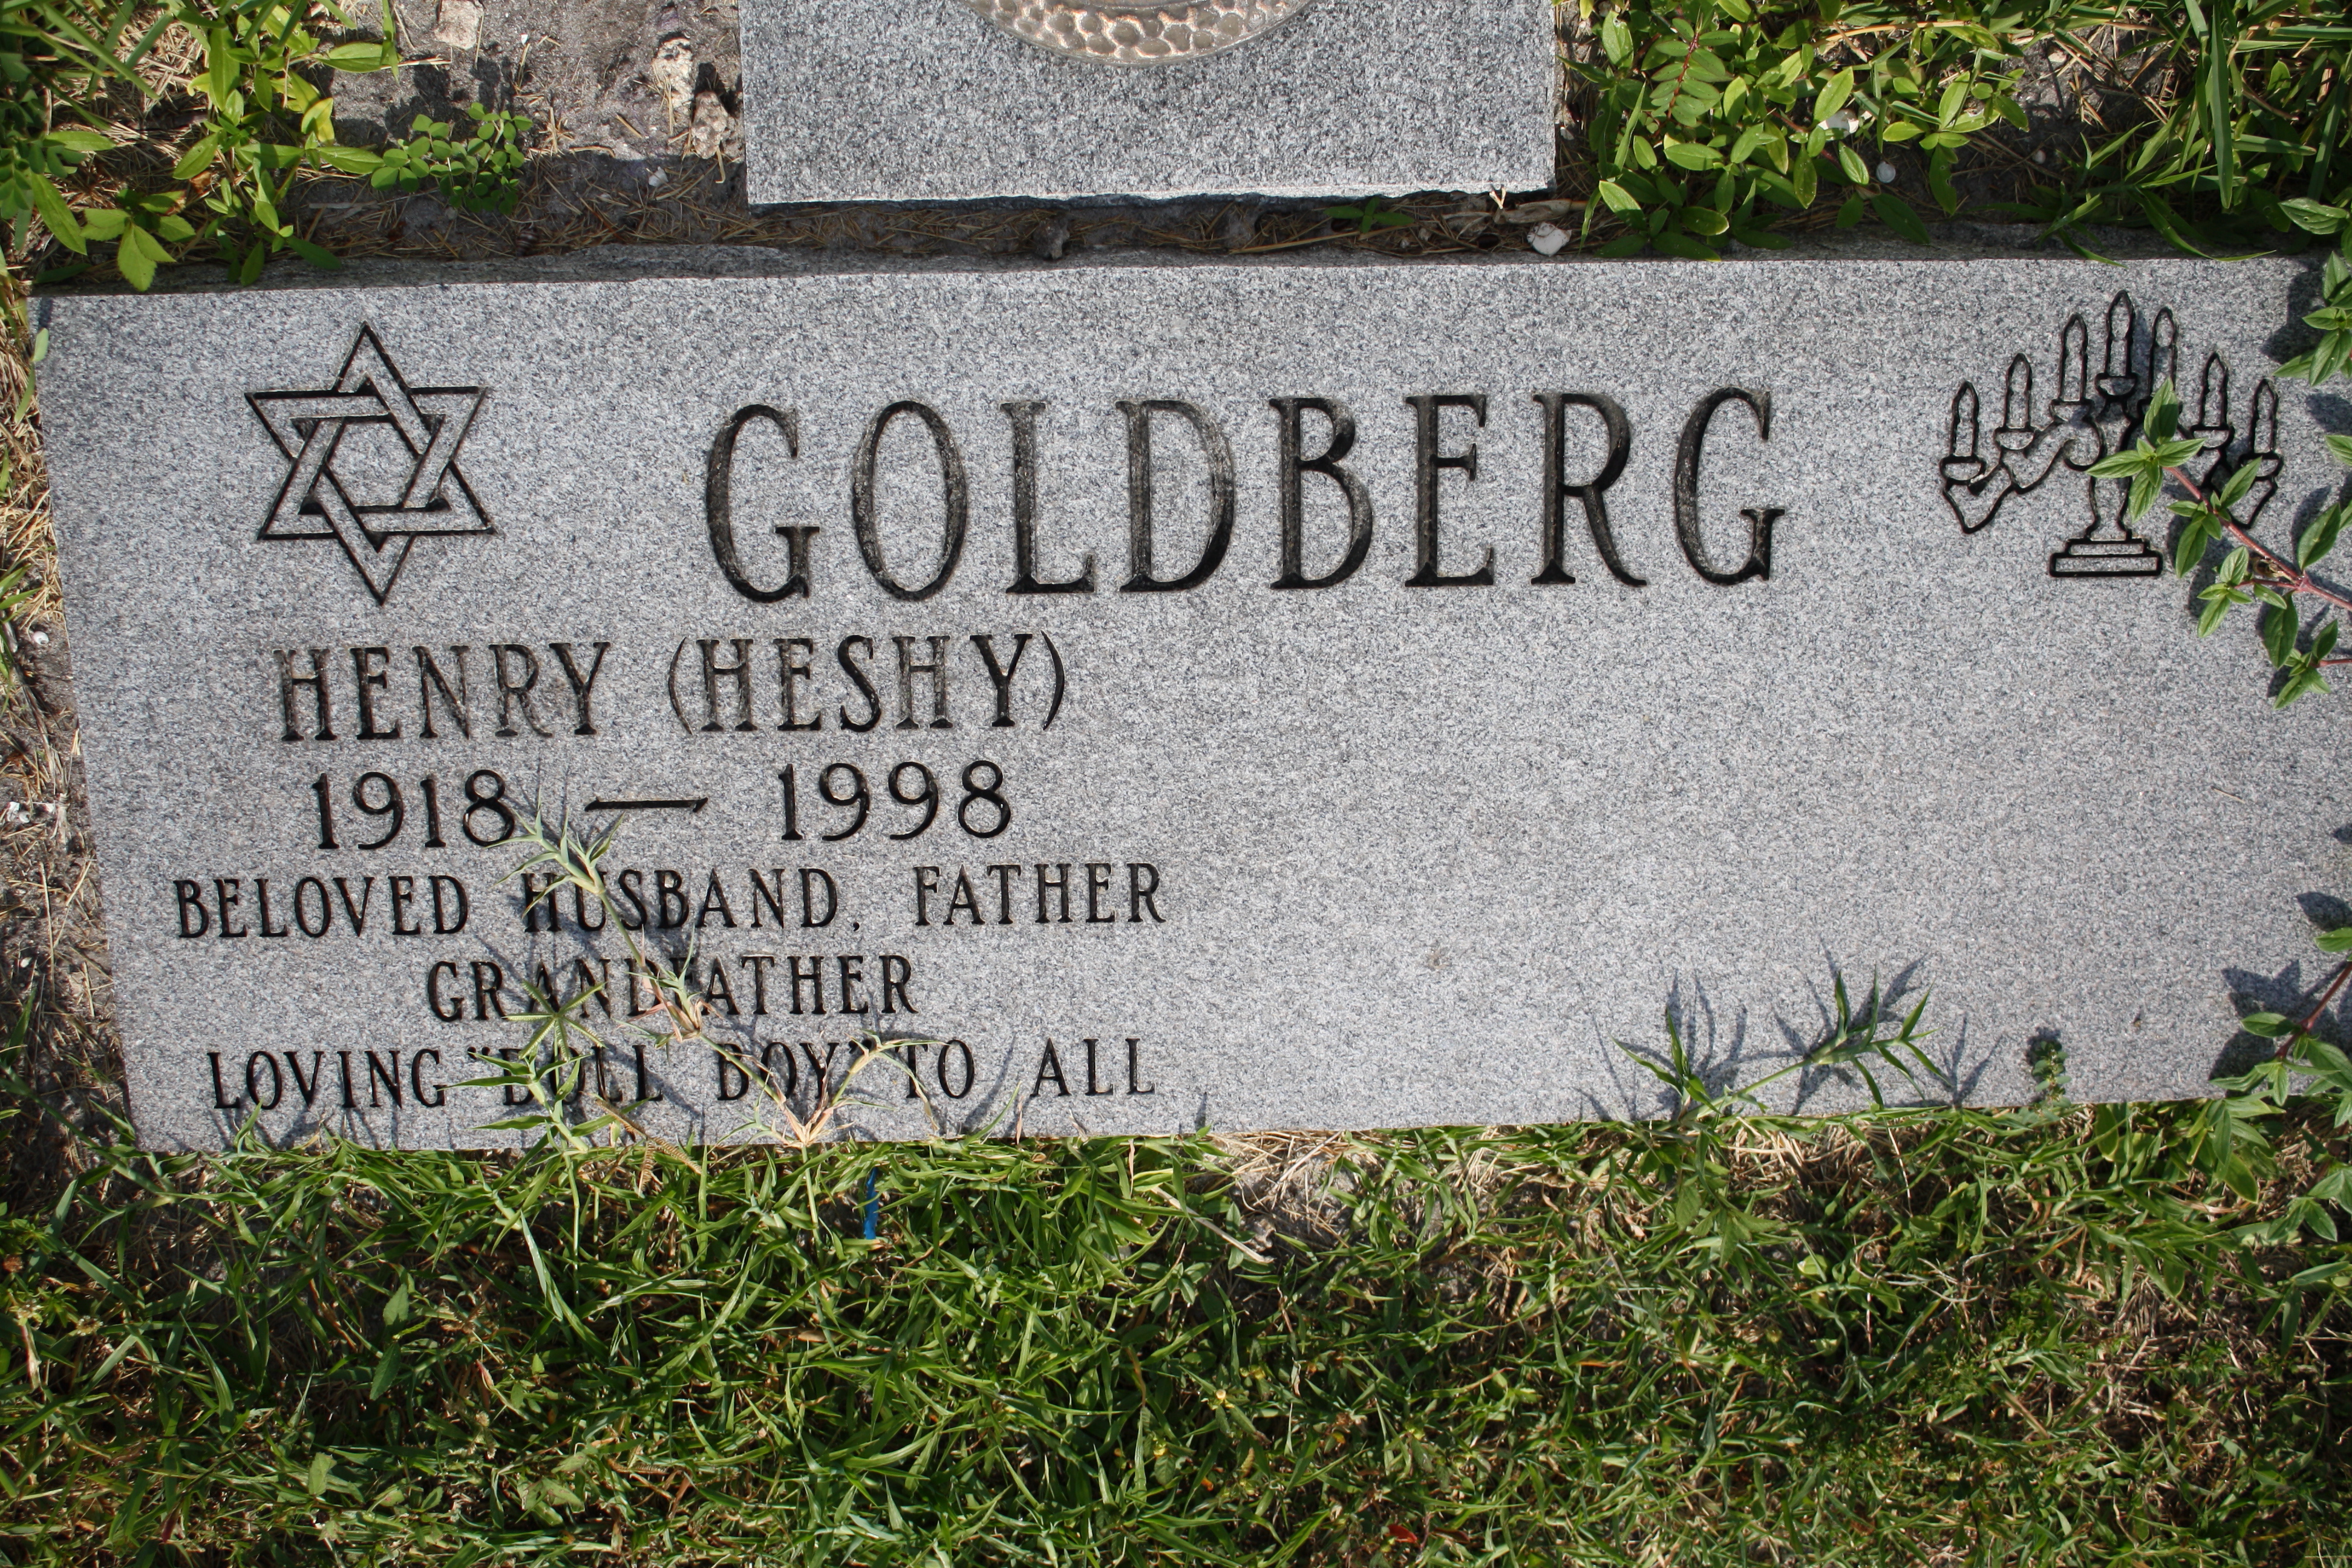 Henry "Heshy" Goldberg